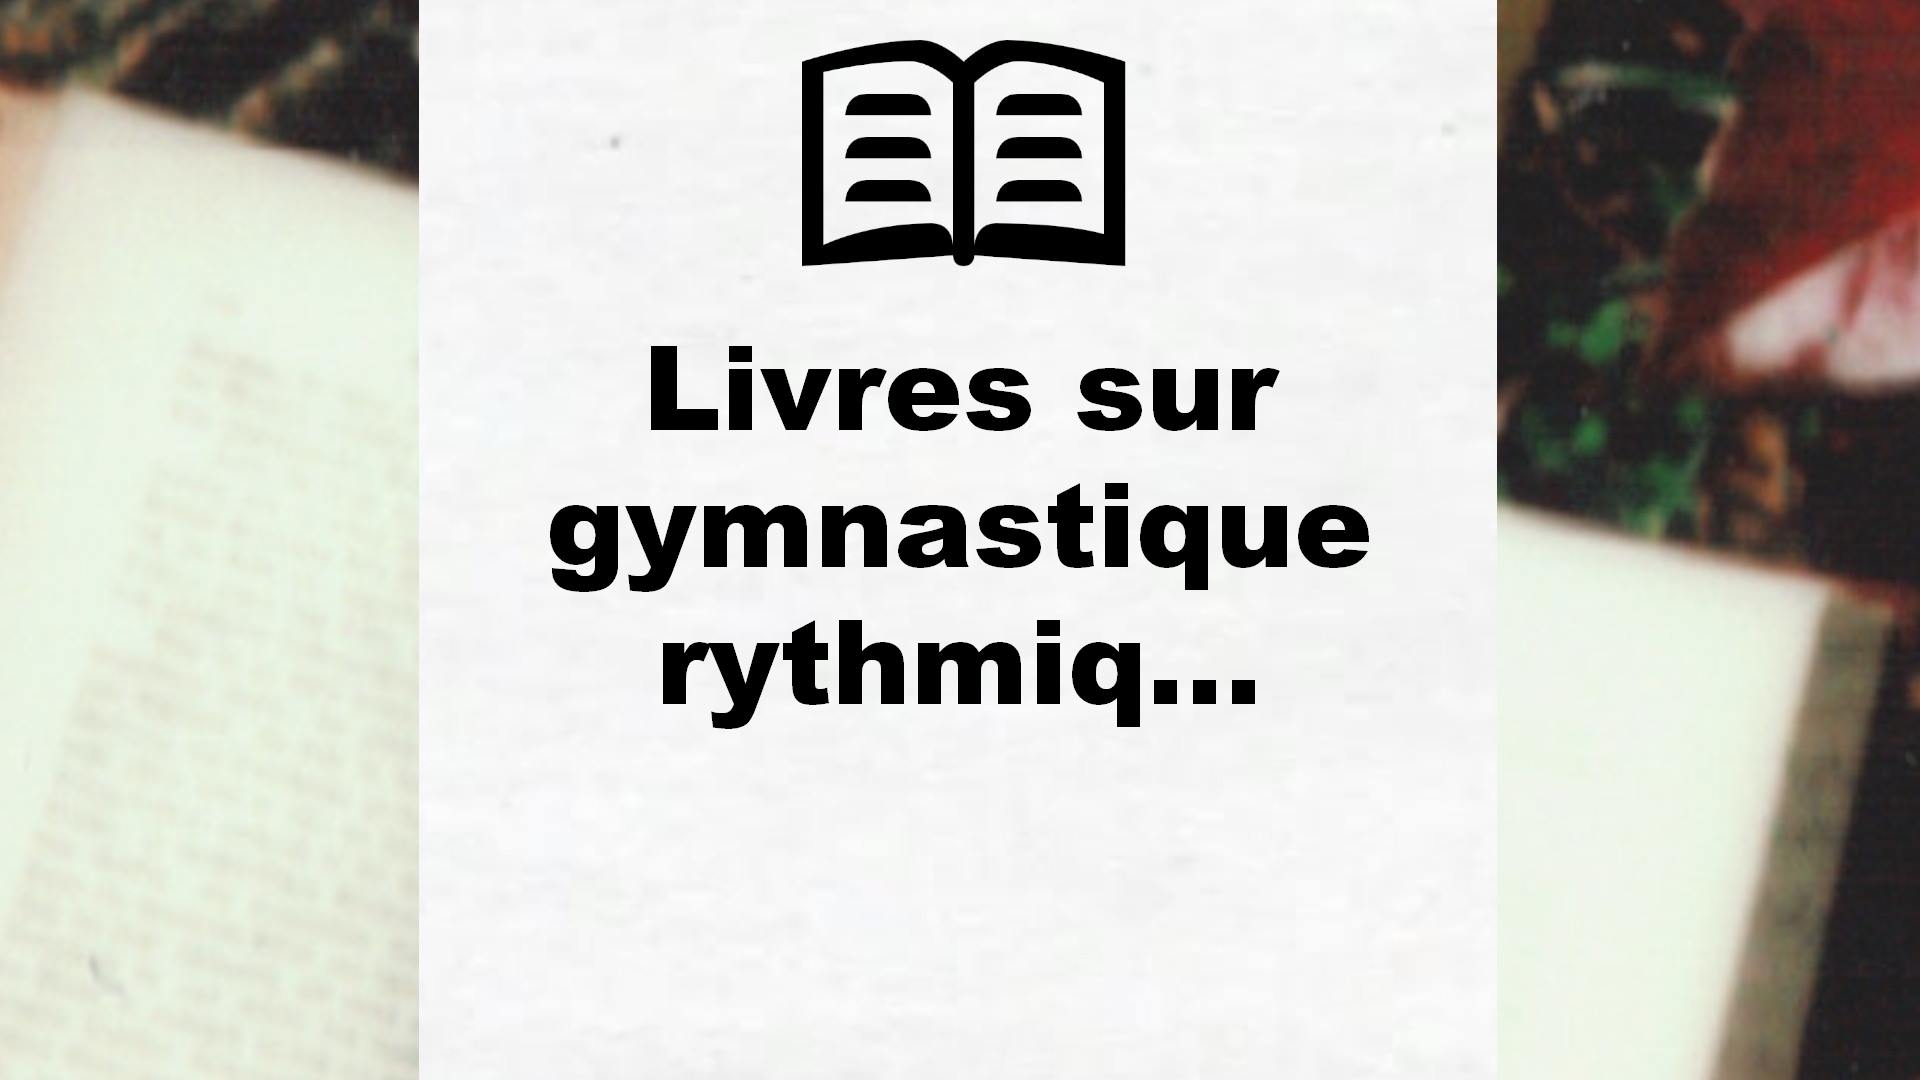 Livres sur gymnastique rythmique